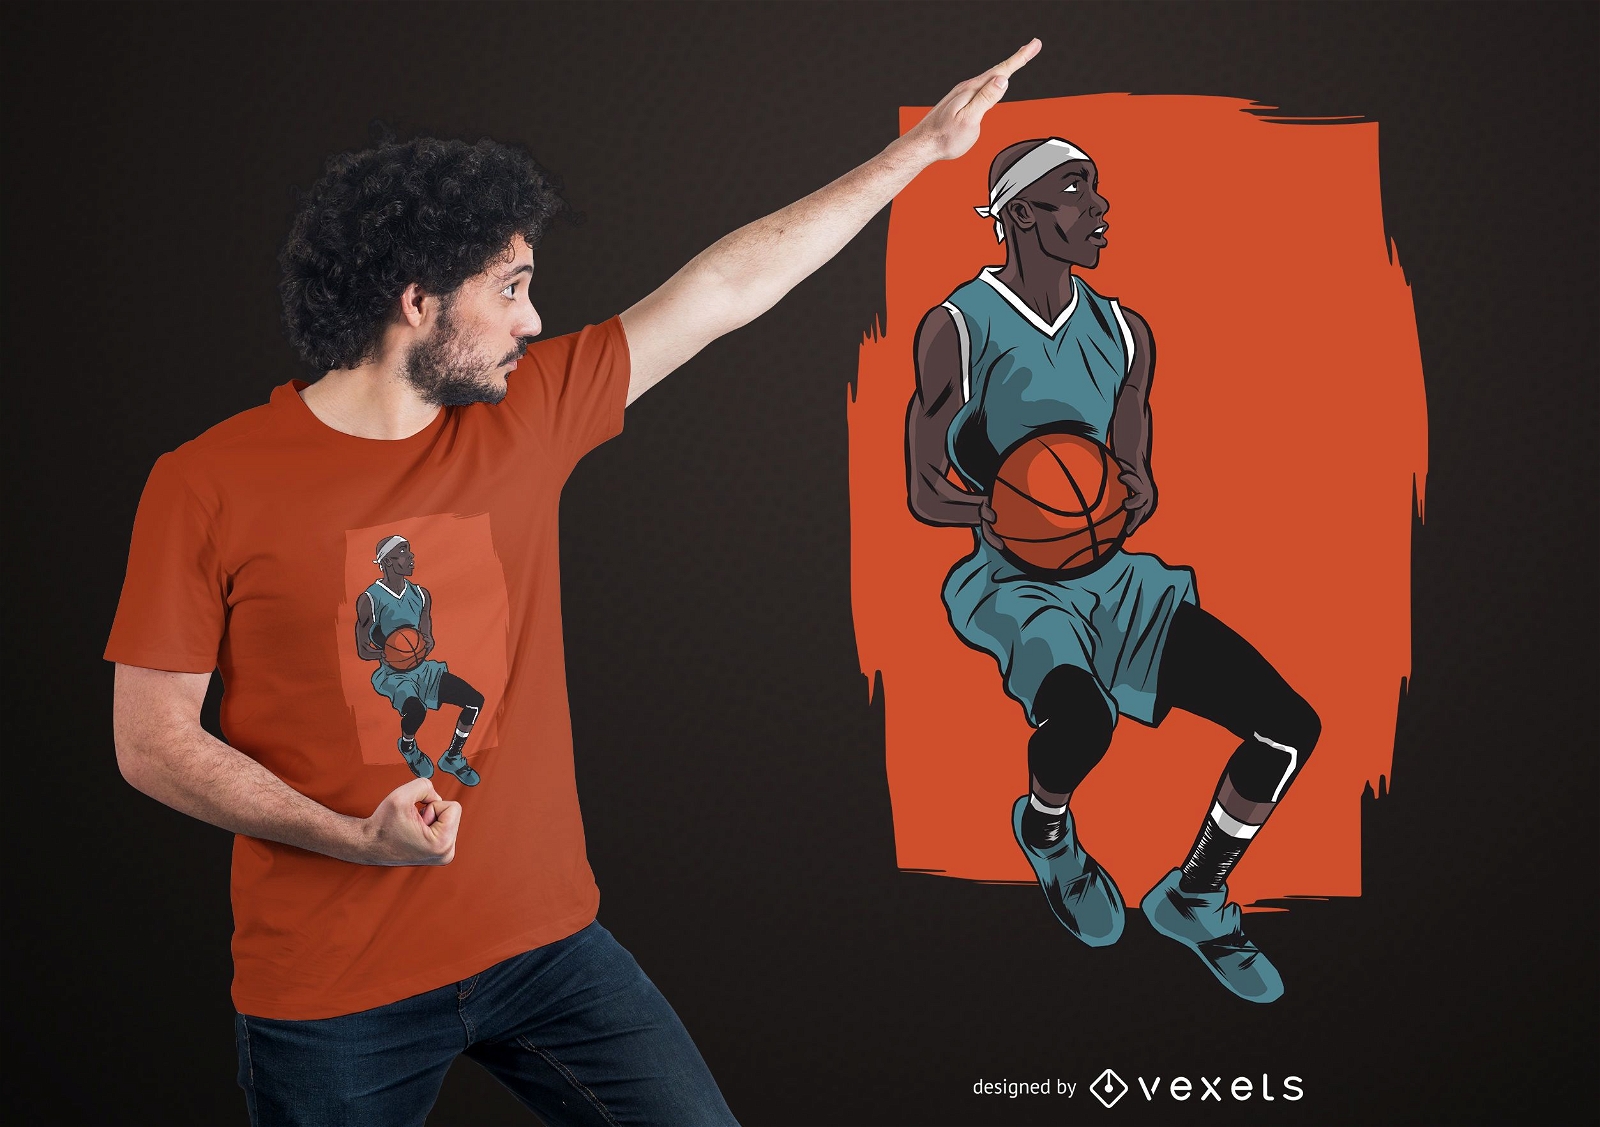 Eu só quero jogar basquete design de camiseta